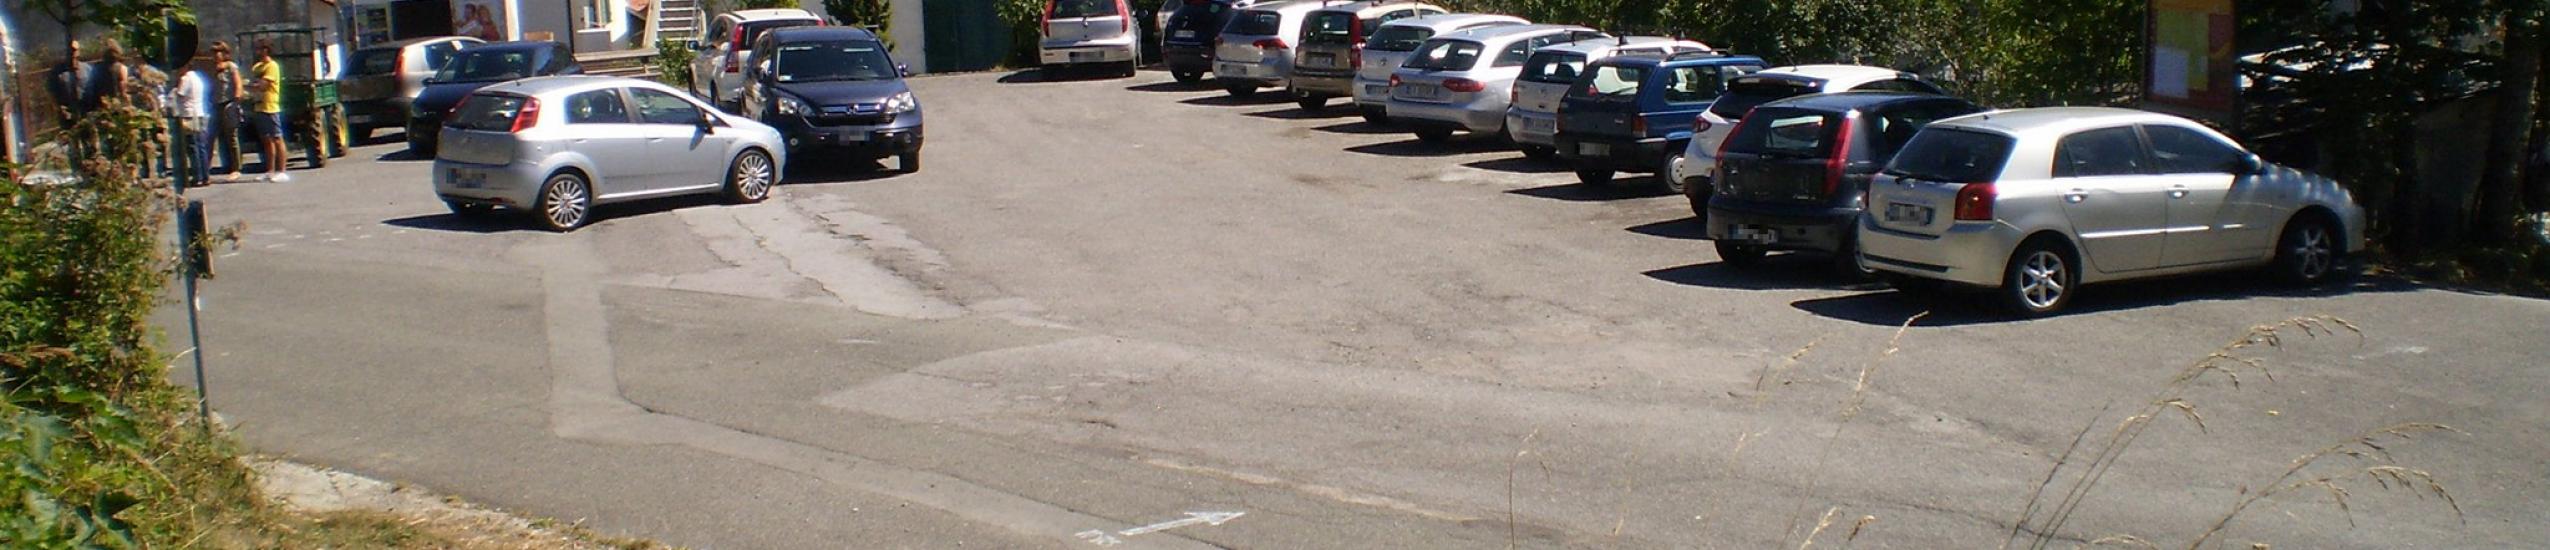 Parcheggio pubblico Caffarena